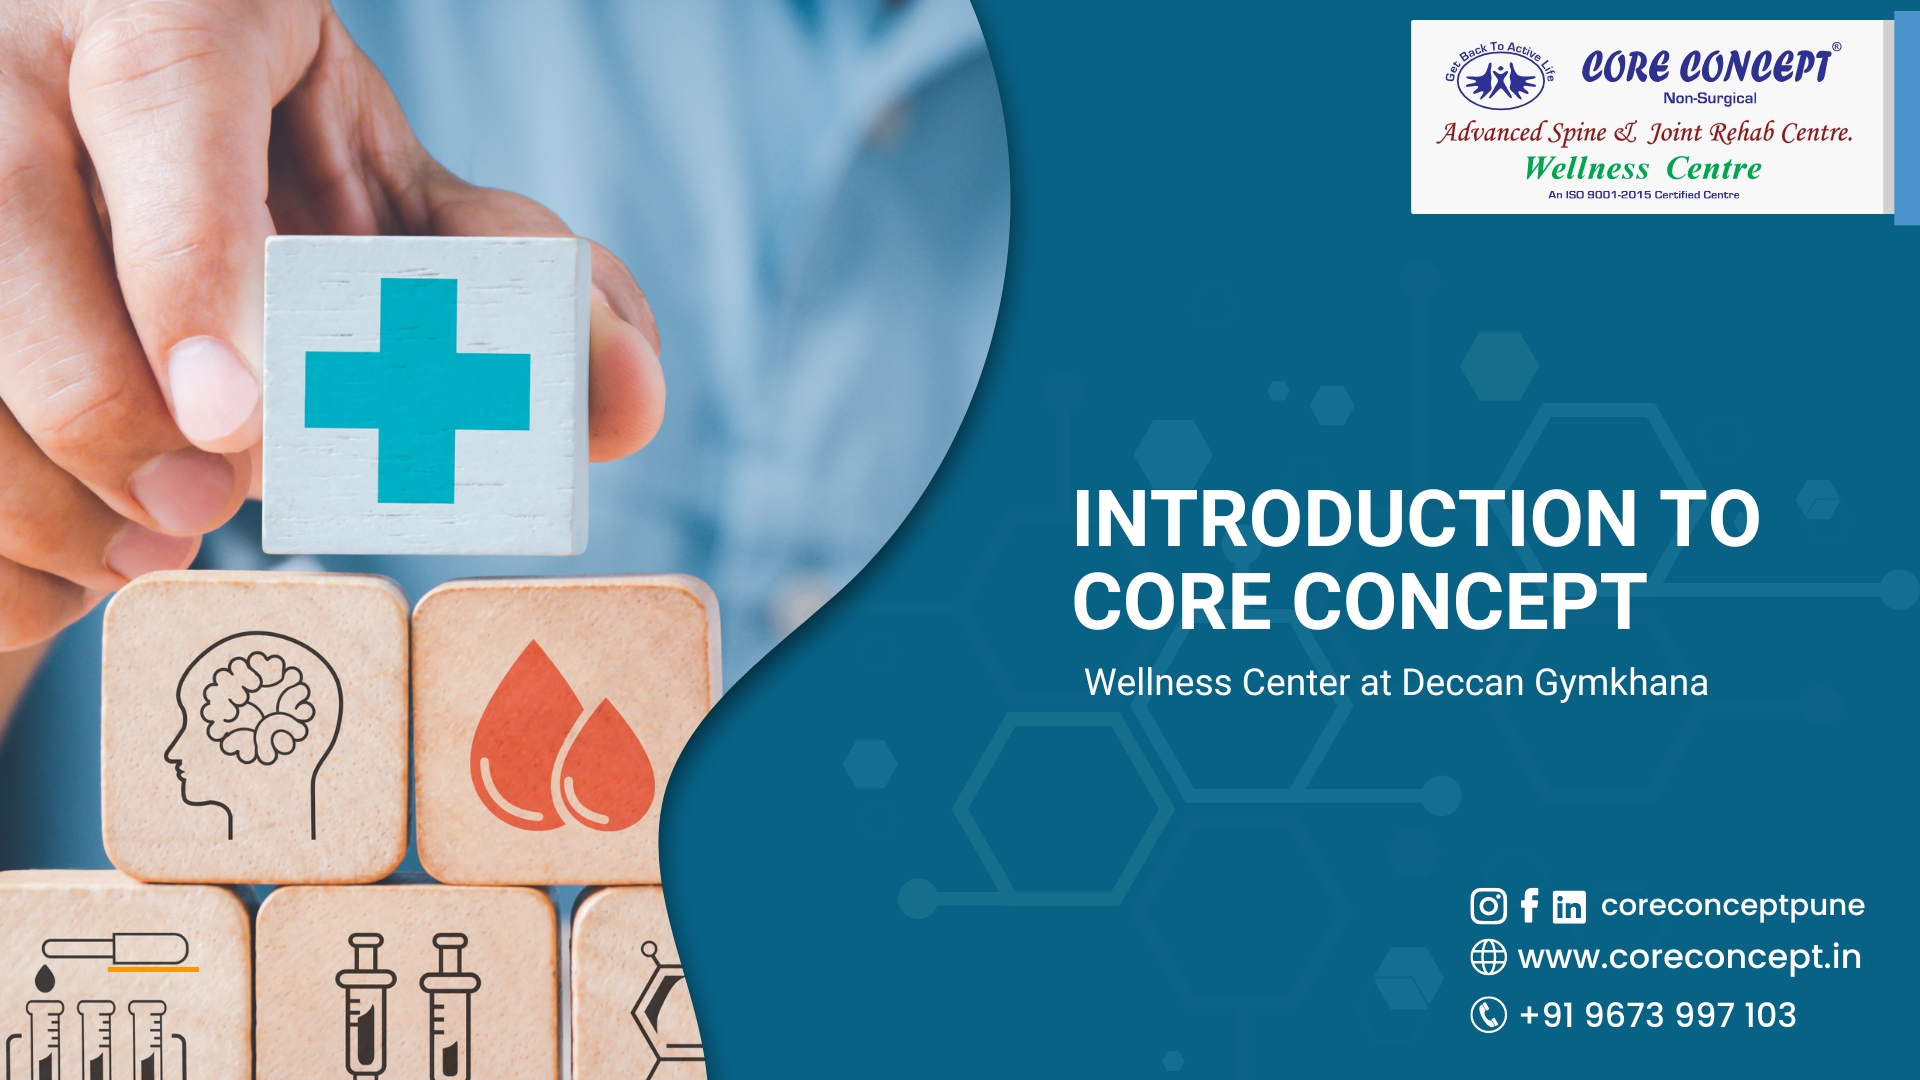 Core Concept Wellness Center at Deccan Gymkhana